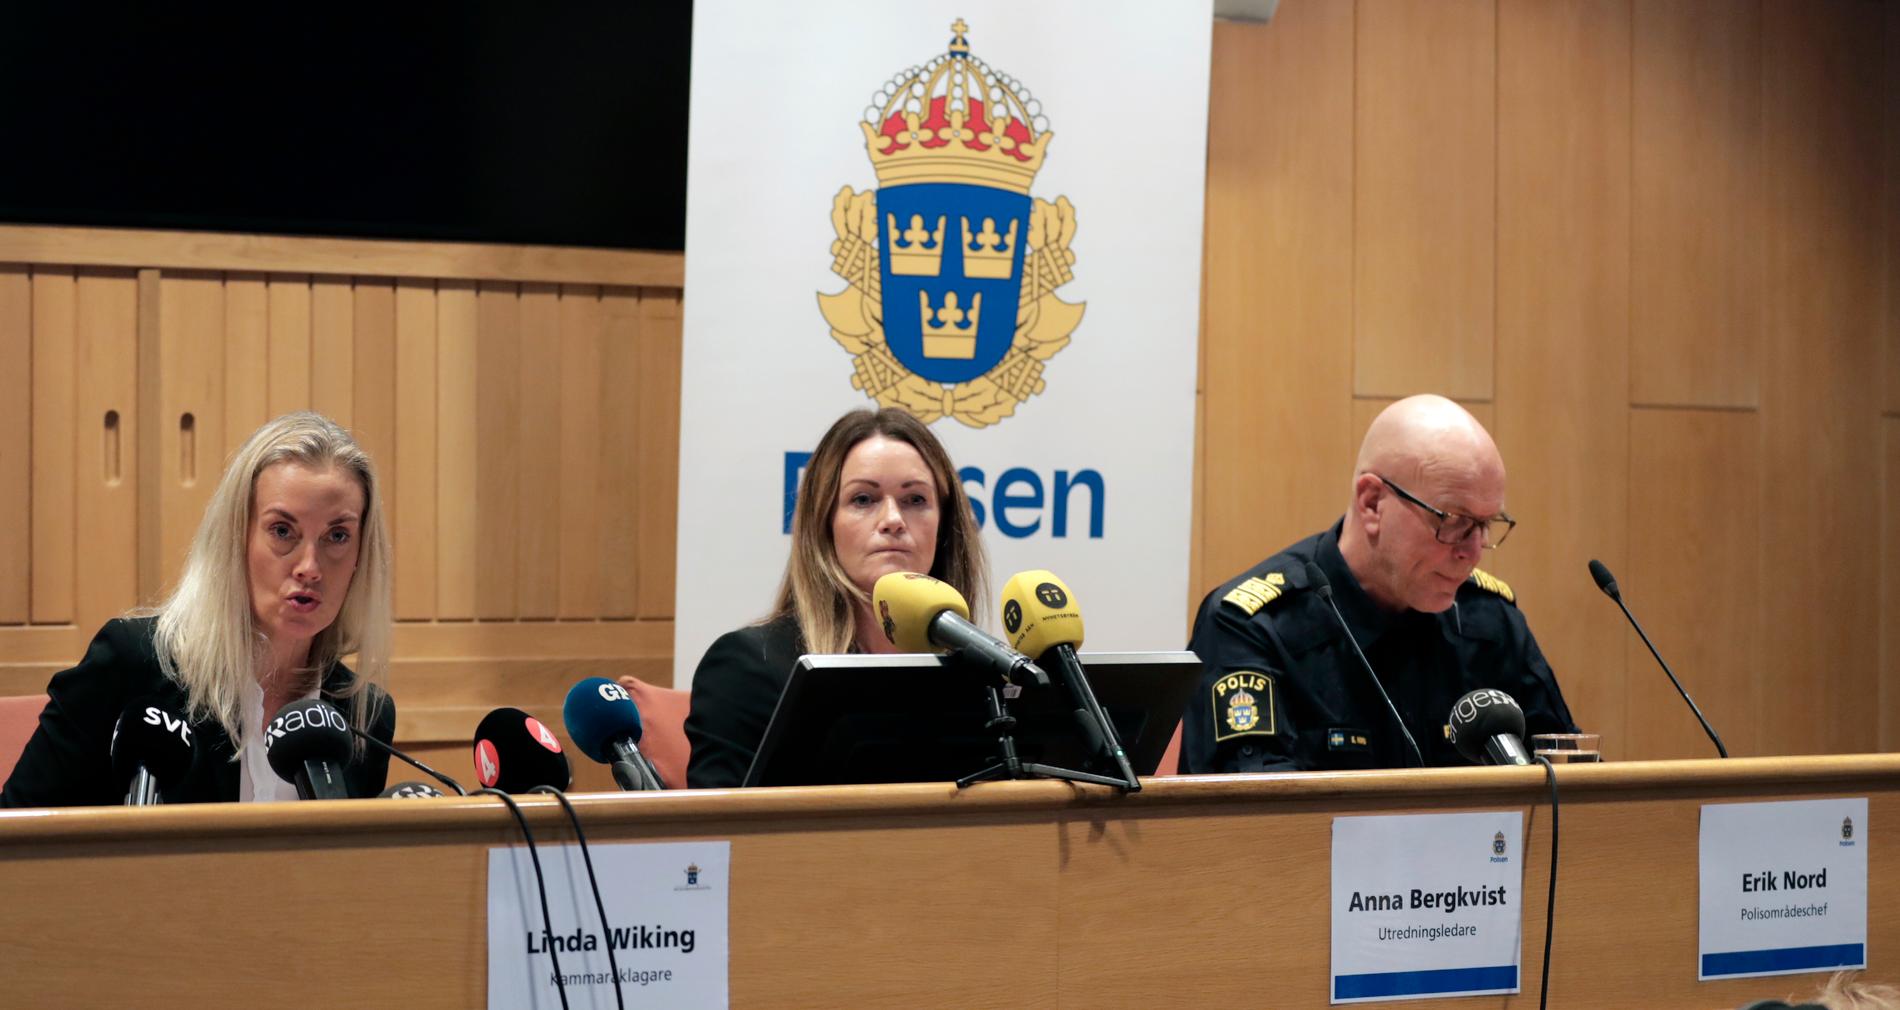 Åklagare Linda Wiking samt Anna Bergkvist och Erik Nord från Polismyndigheten under pressträffen.